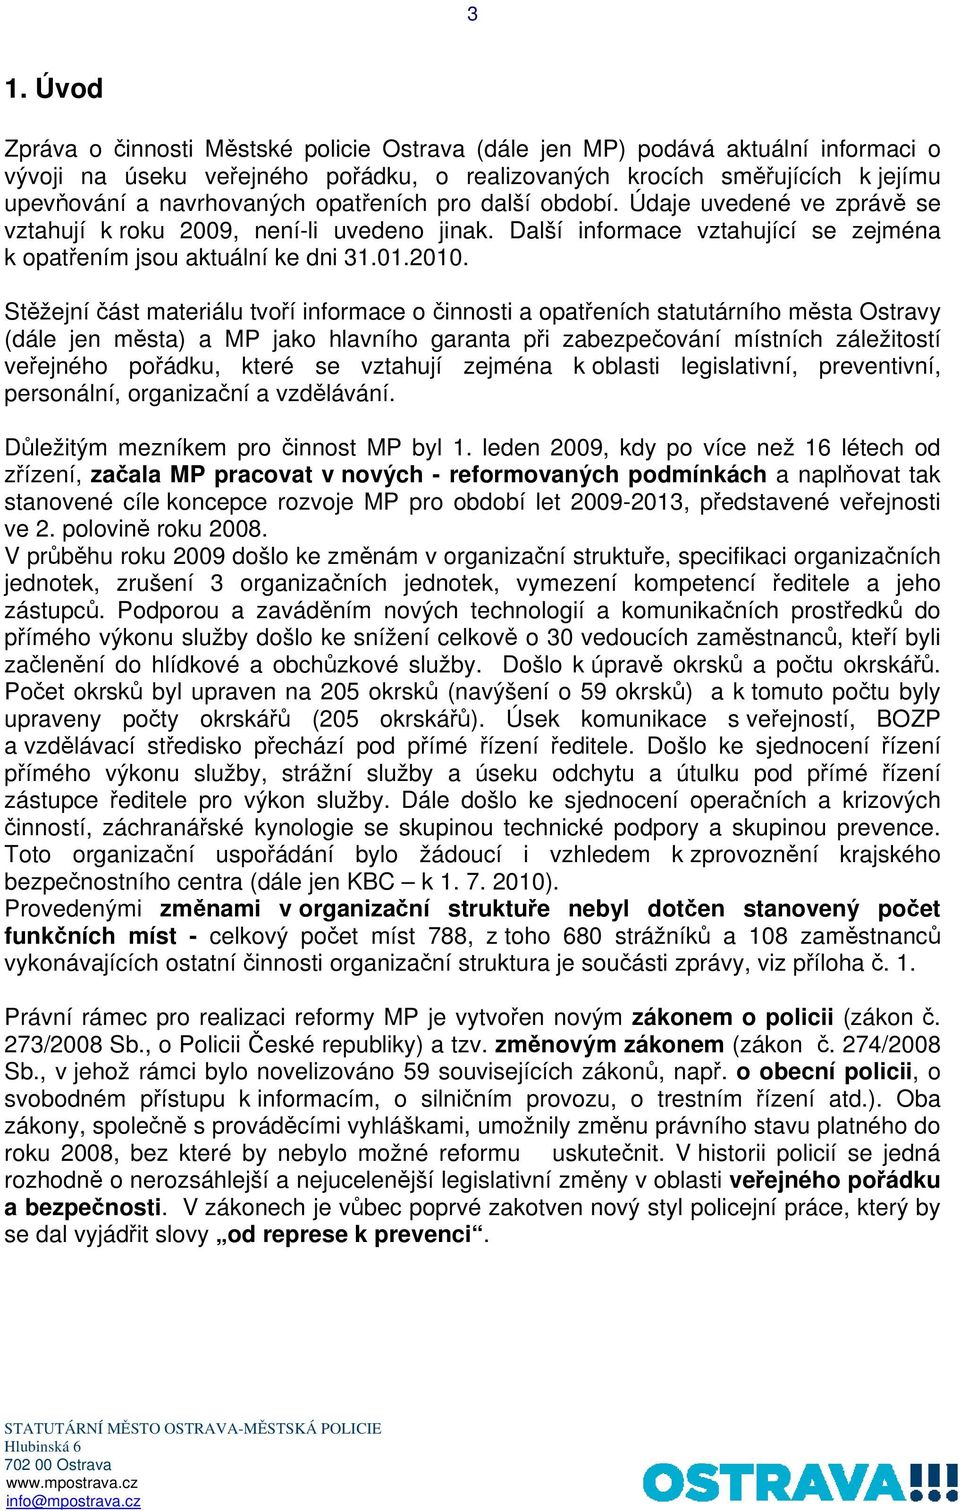 Stěžejní část materiálu tvoří informace o činnosti a opatřeních statutárního města Ostravy (dále jen města) a MP jako hlavního garanta při zabezpečování místních záležitostí veřejného pořádku, které